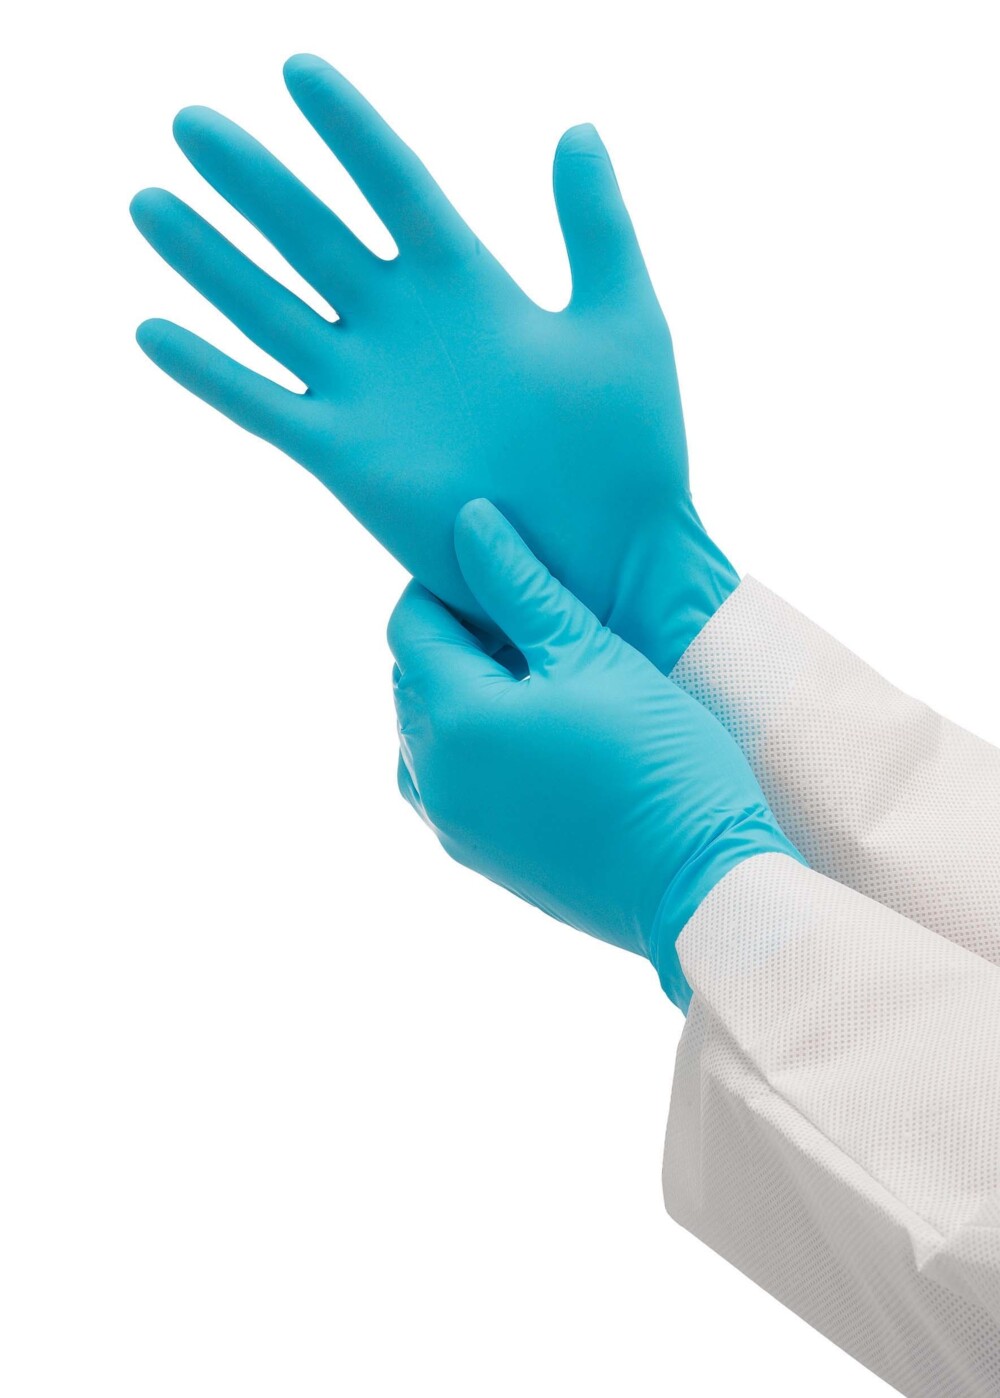 Gants ambidextres KleenGuard® G10 Nitrile 57374 - Bleu, XL, 10 x 90 (900 gants) - 57374